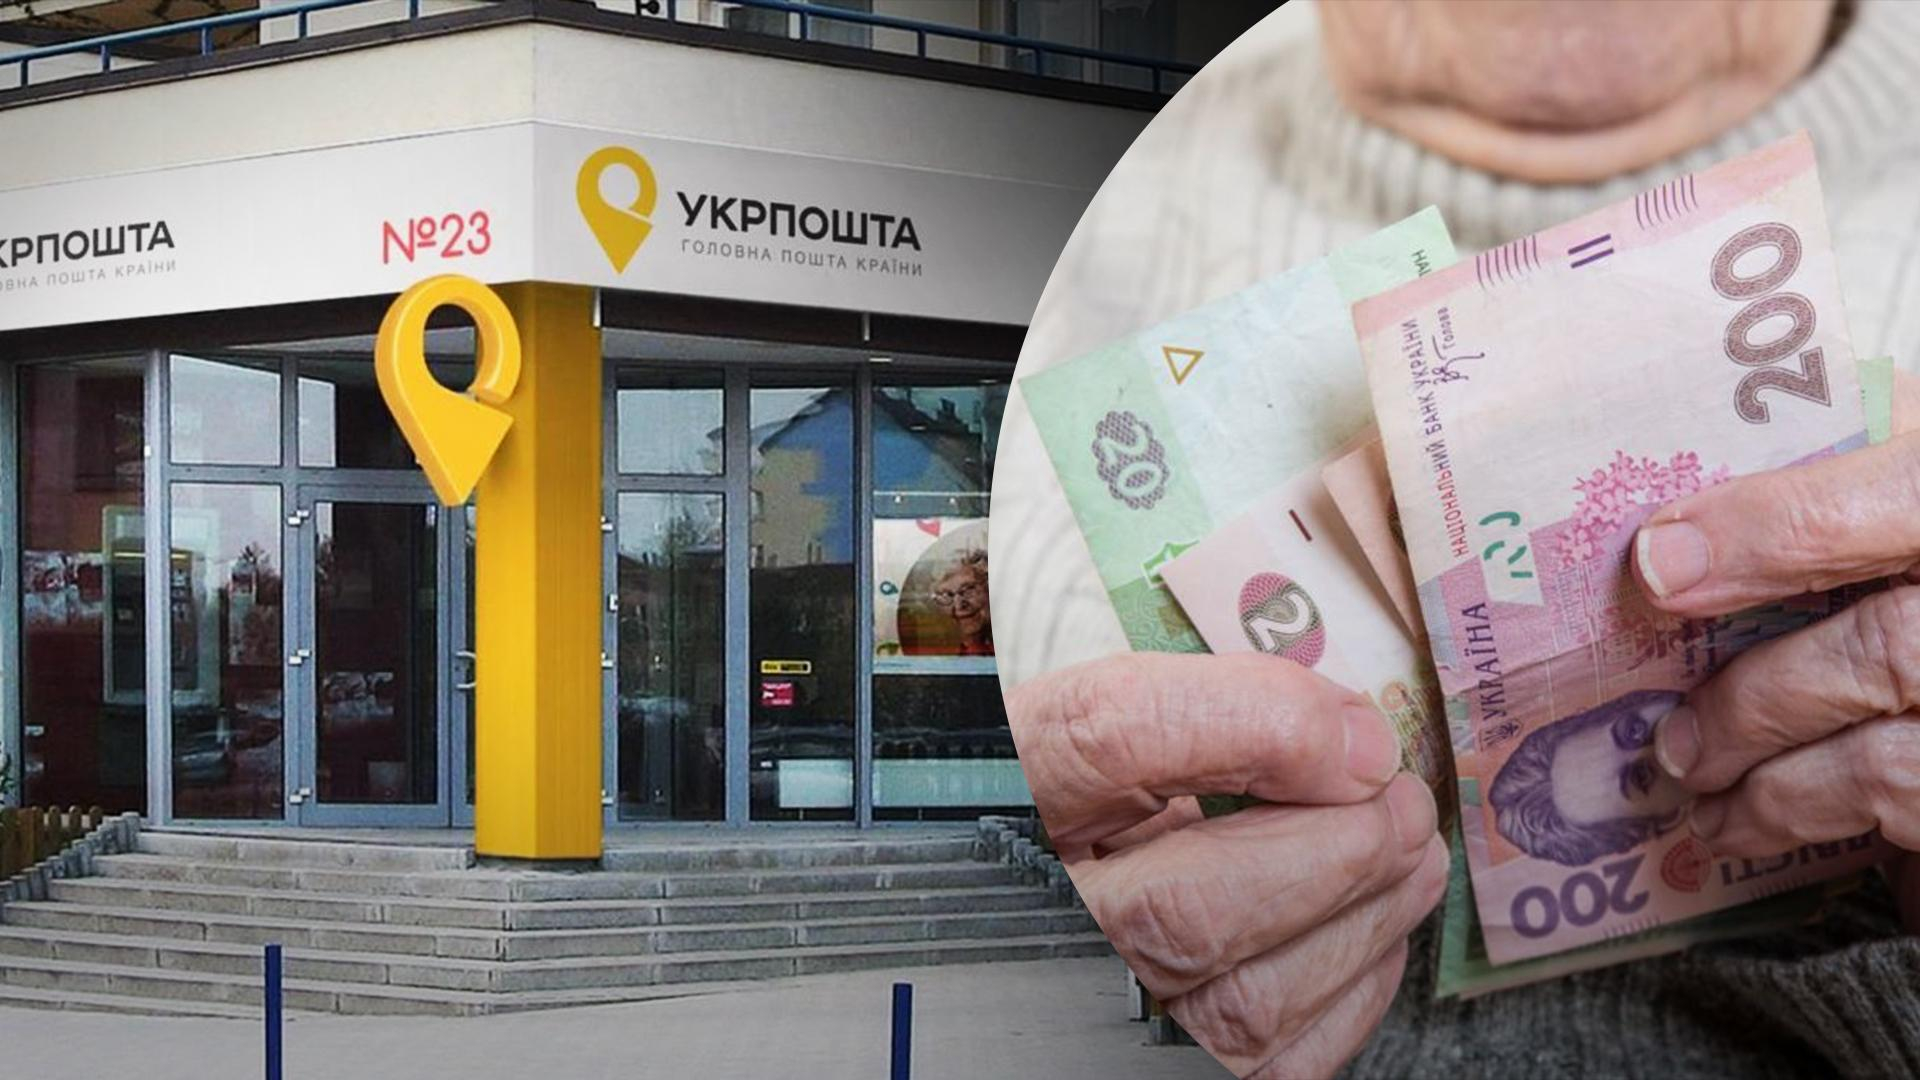 Лише через "Укрпошту": як жителі окупованих територій зможуть отримати пенсії та інші соцвиплати